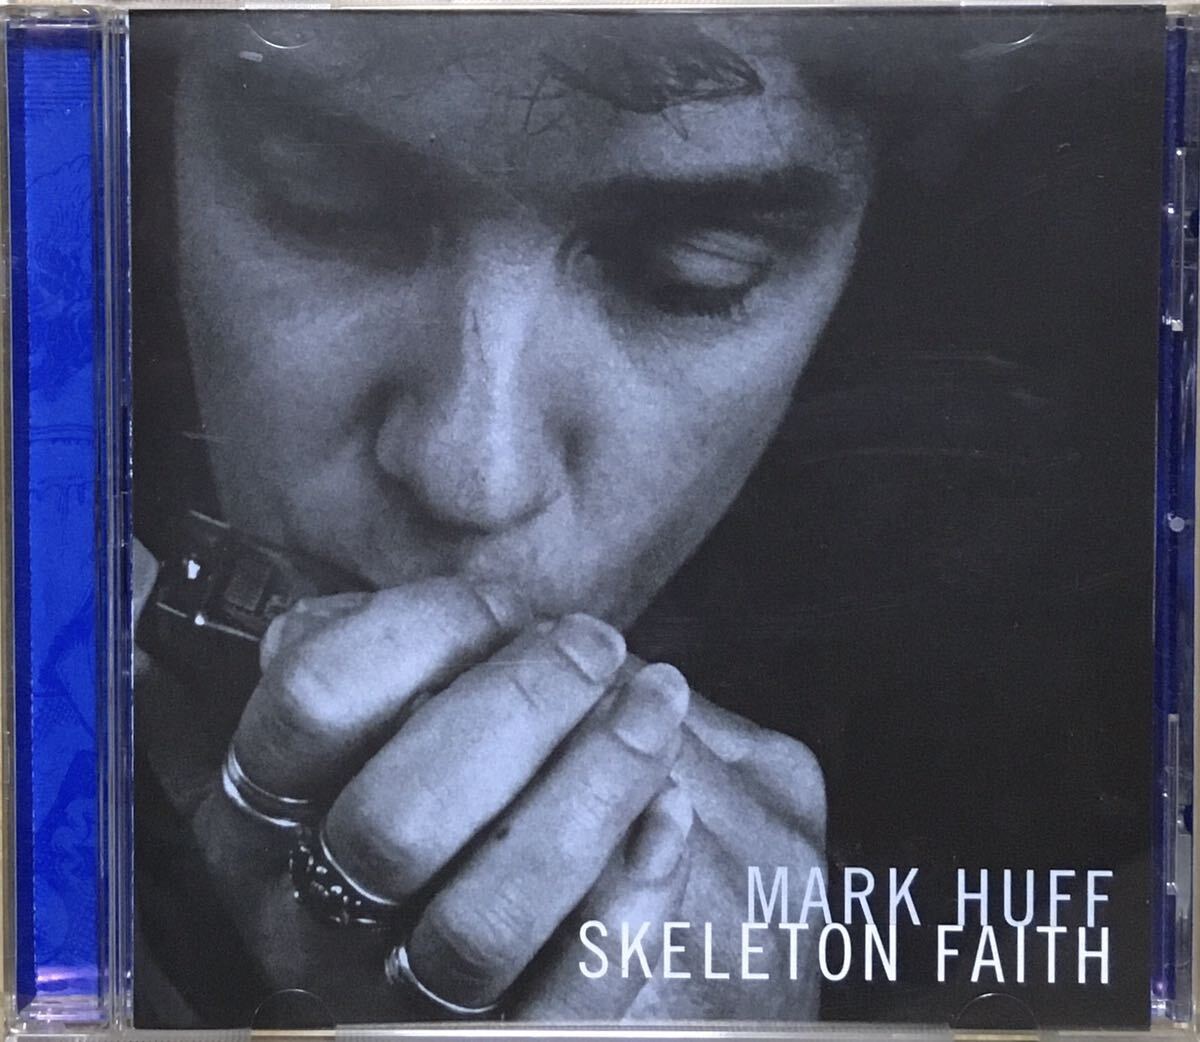 Mark Huff [Skeleton Faith] ブルースロック / ルーツロック / パブロック / バーバンド / シンガーソングライターの画像1